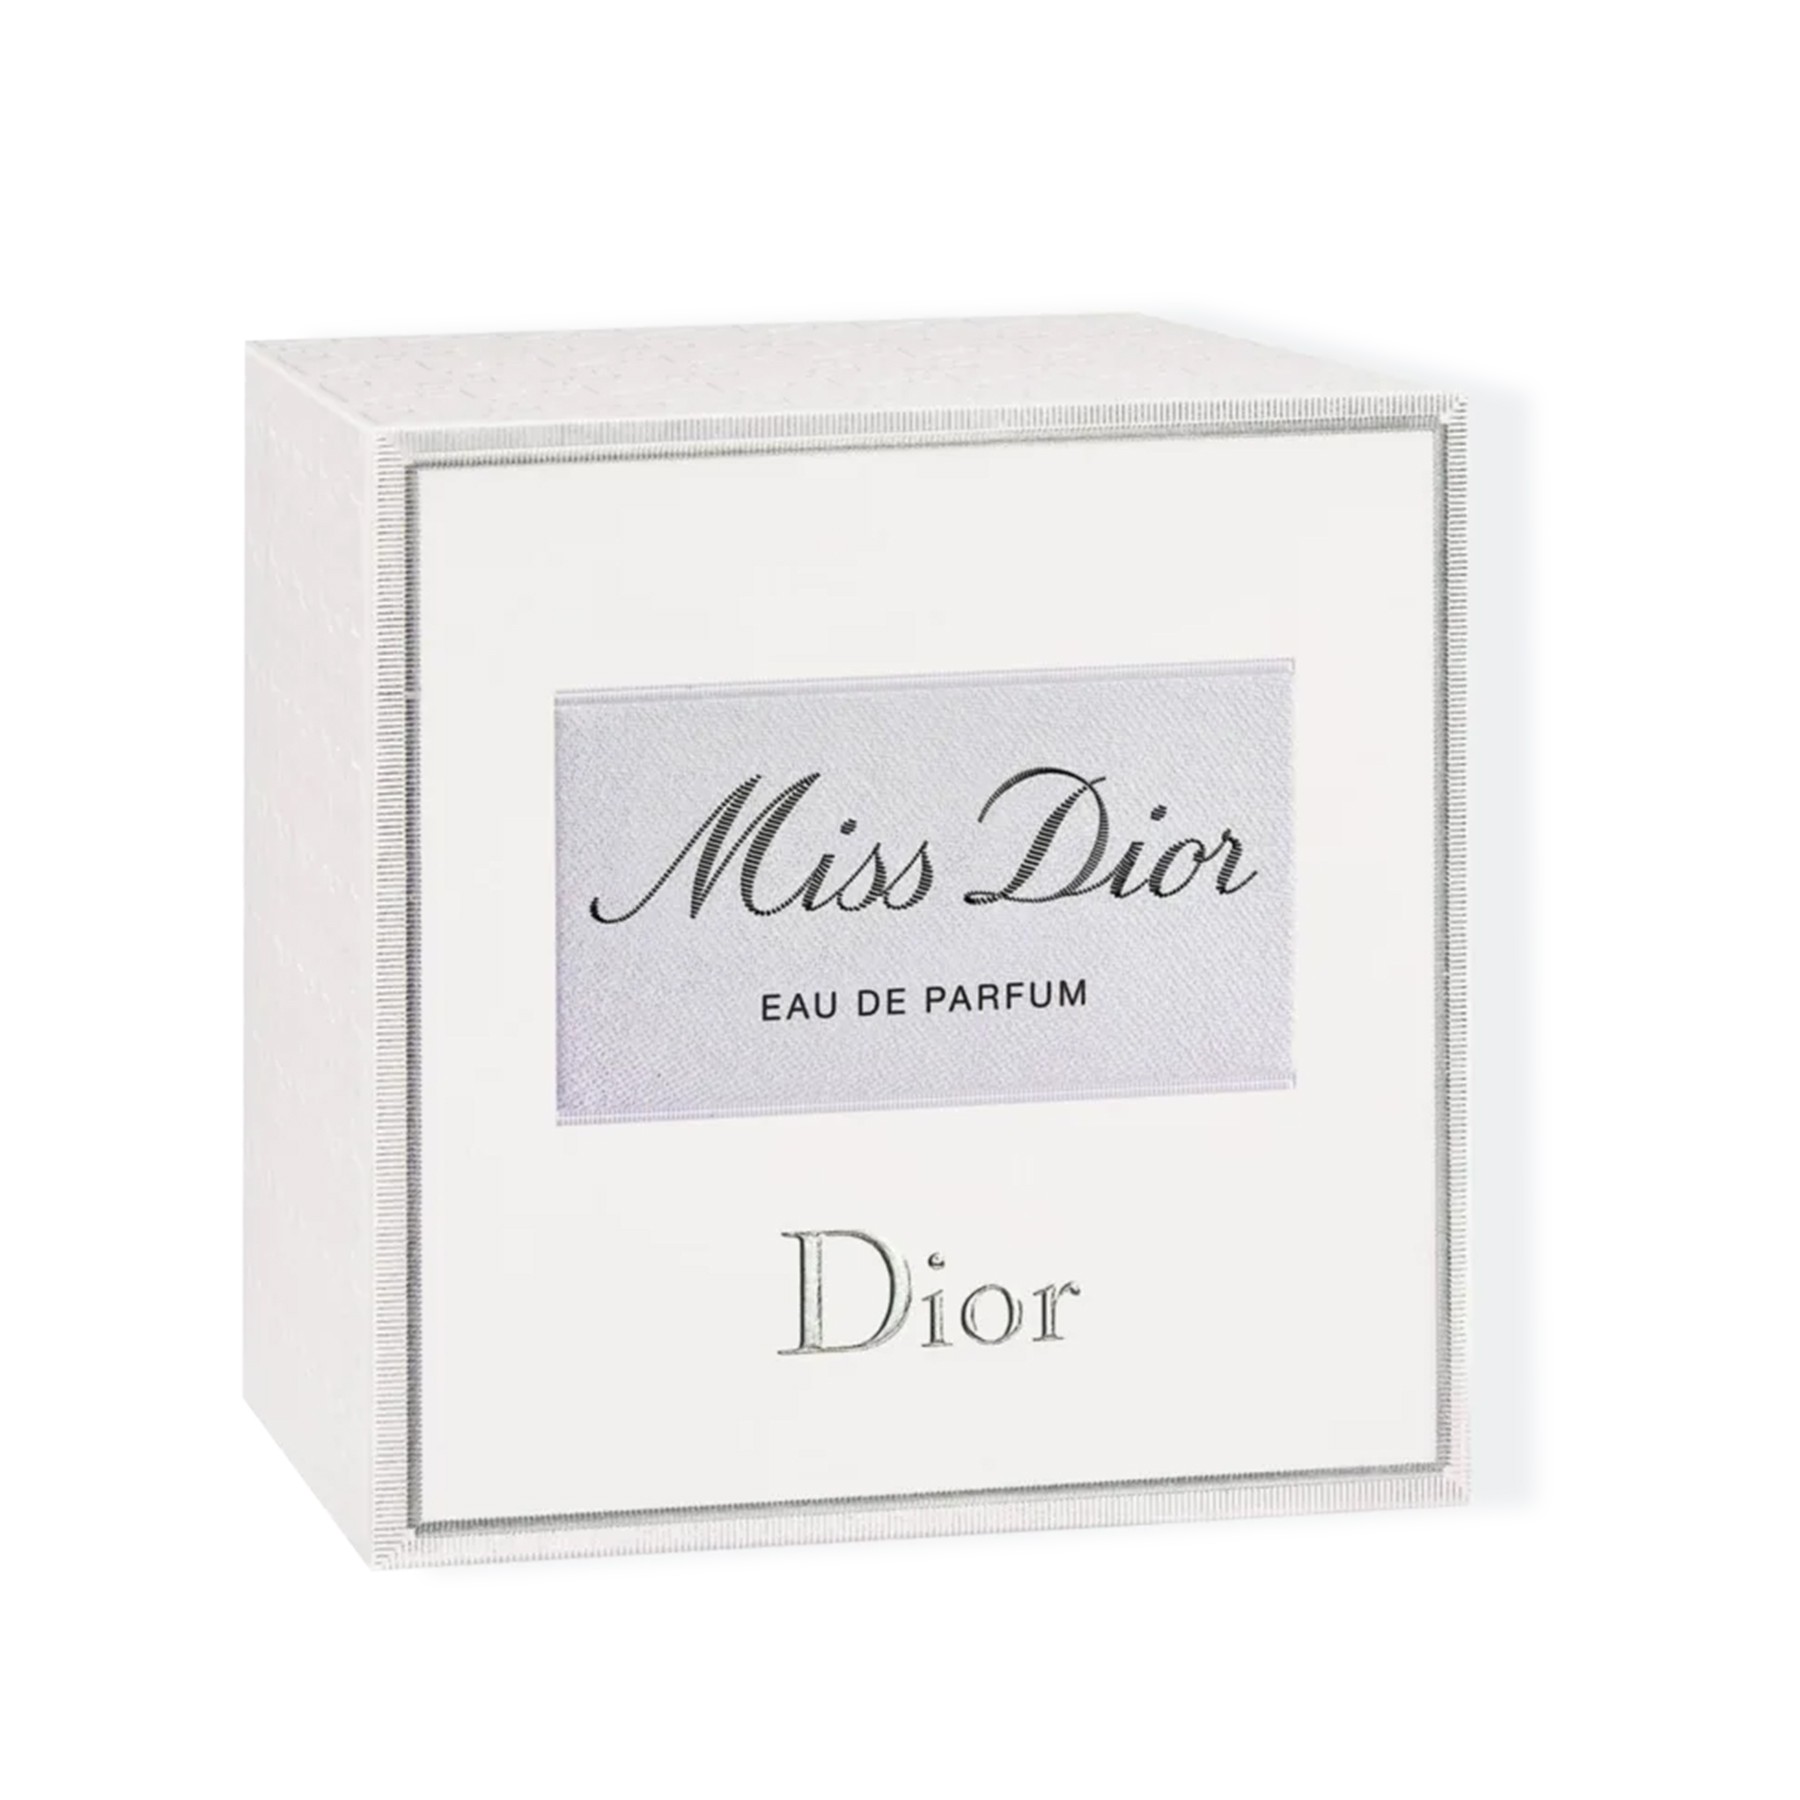 Miss Dior Dior Perfume Feminino Eau de Parfum 30ml - DOLCE VITA